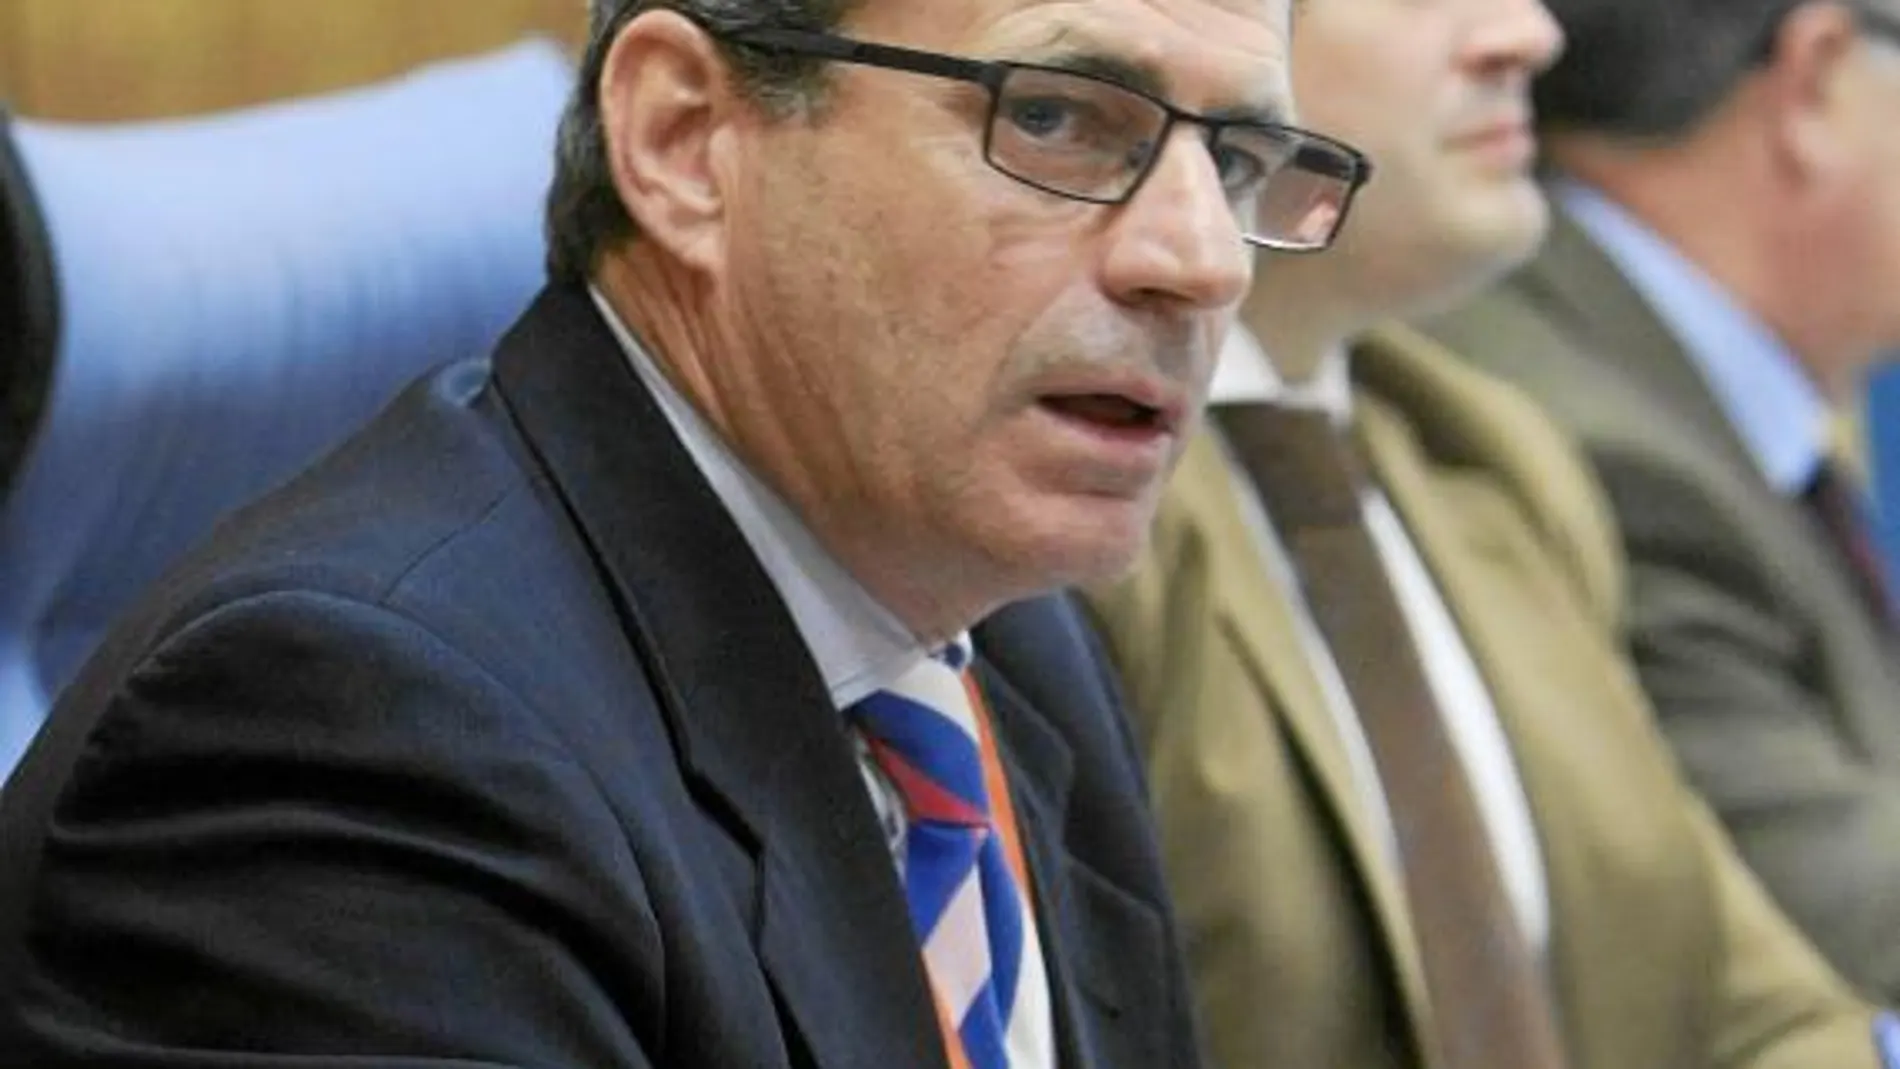 El interventor provincial de Huelva, Miguel Ángel García Bermúdez, durante su intervención en la comisión de investigación de los cursos de formación